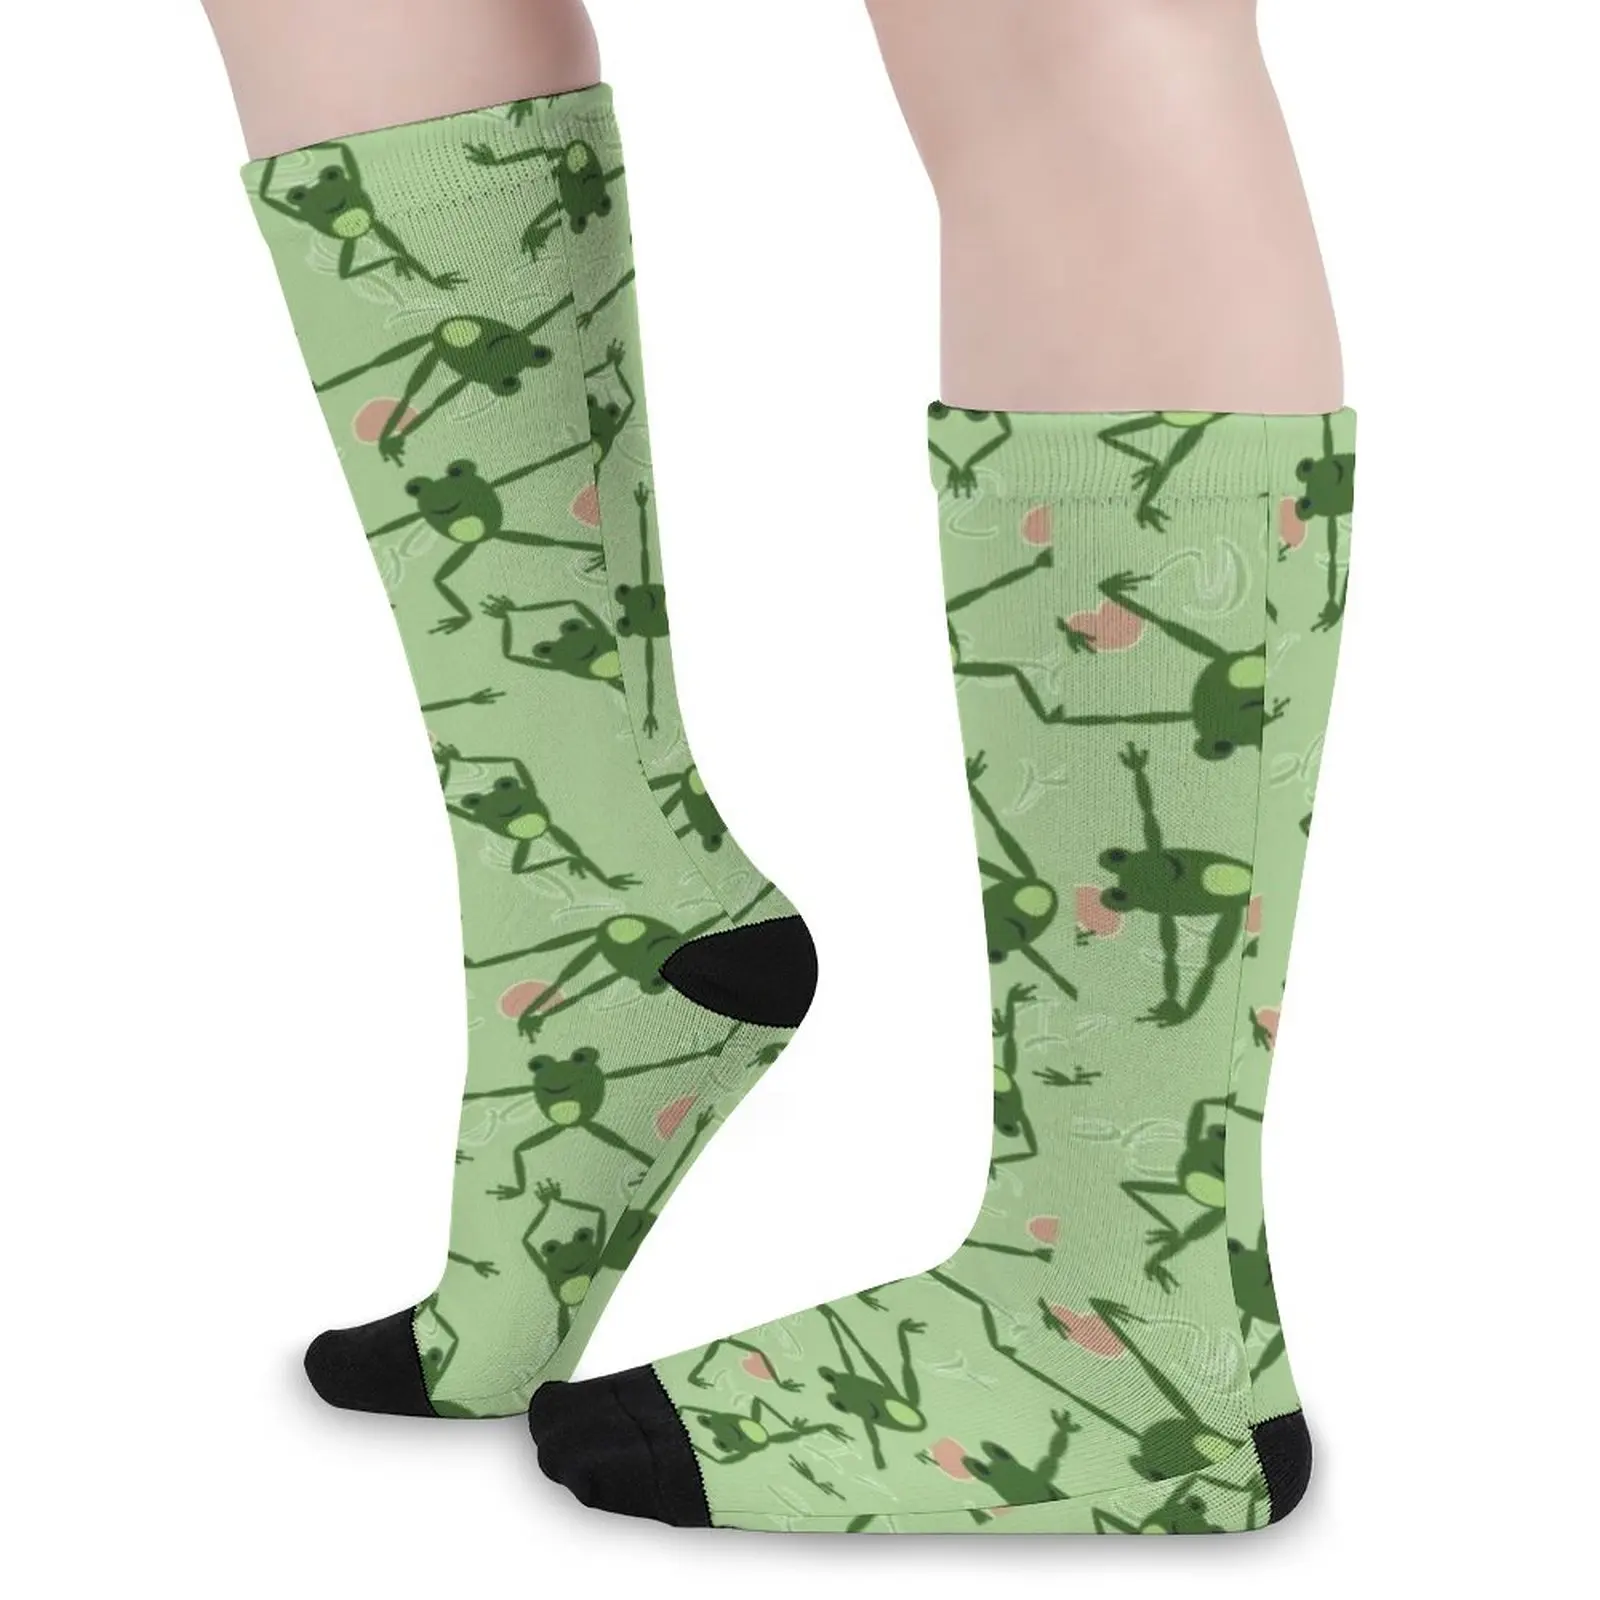 

Носки для занятий йогой с забавной лягушкой, Чулки с милым зеленым животным дизайном, зимние нескользящие носки унисекс, удобные дизайнерские носки для скейтборда